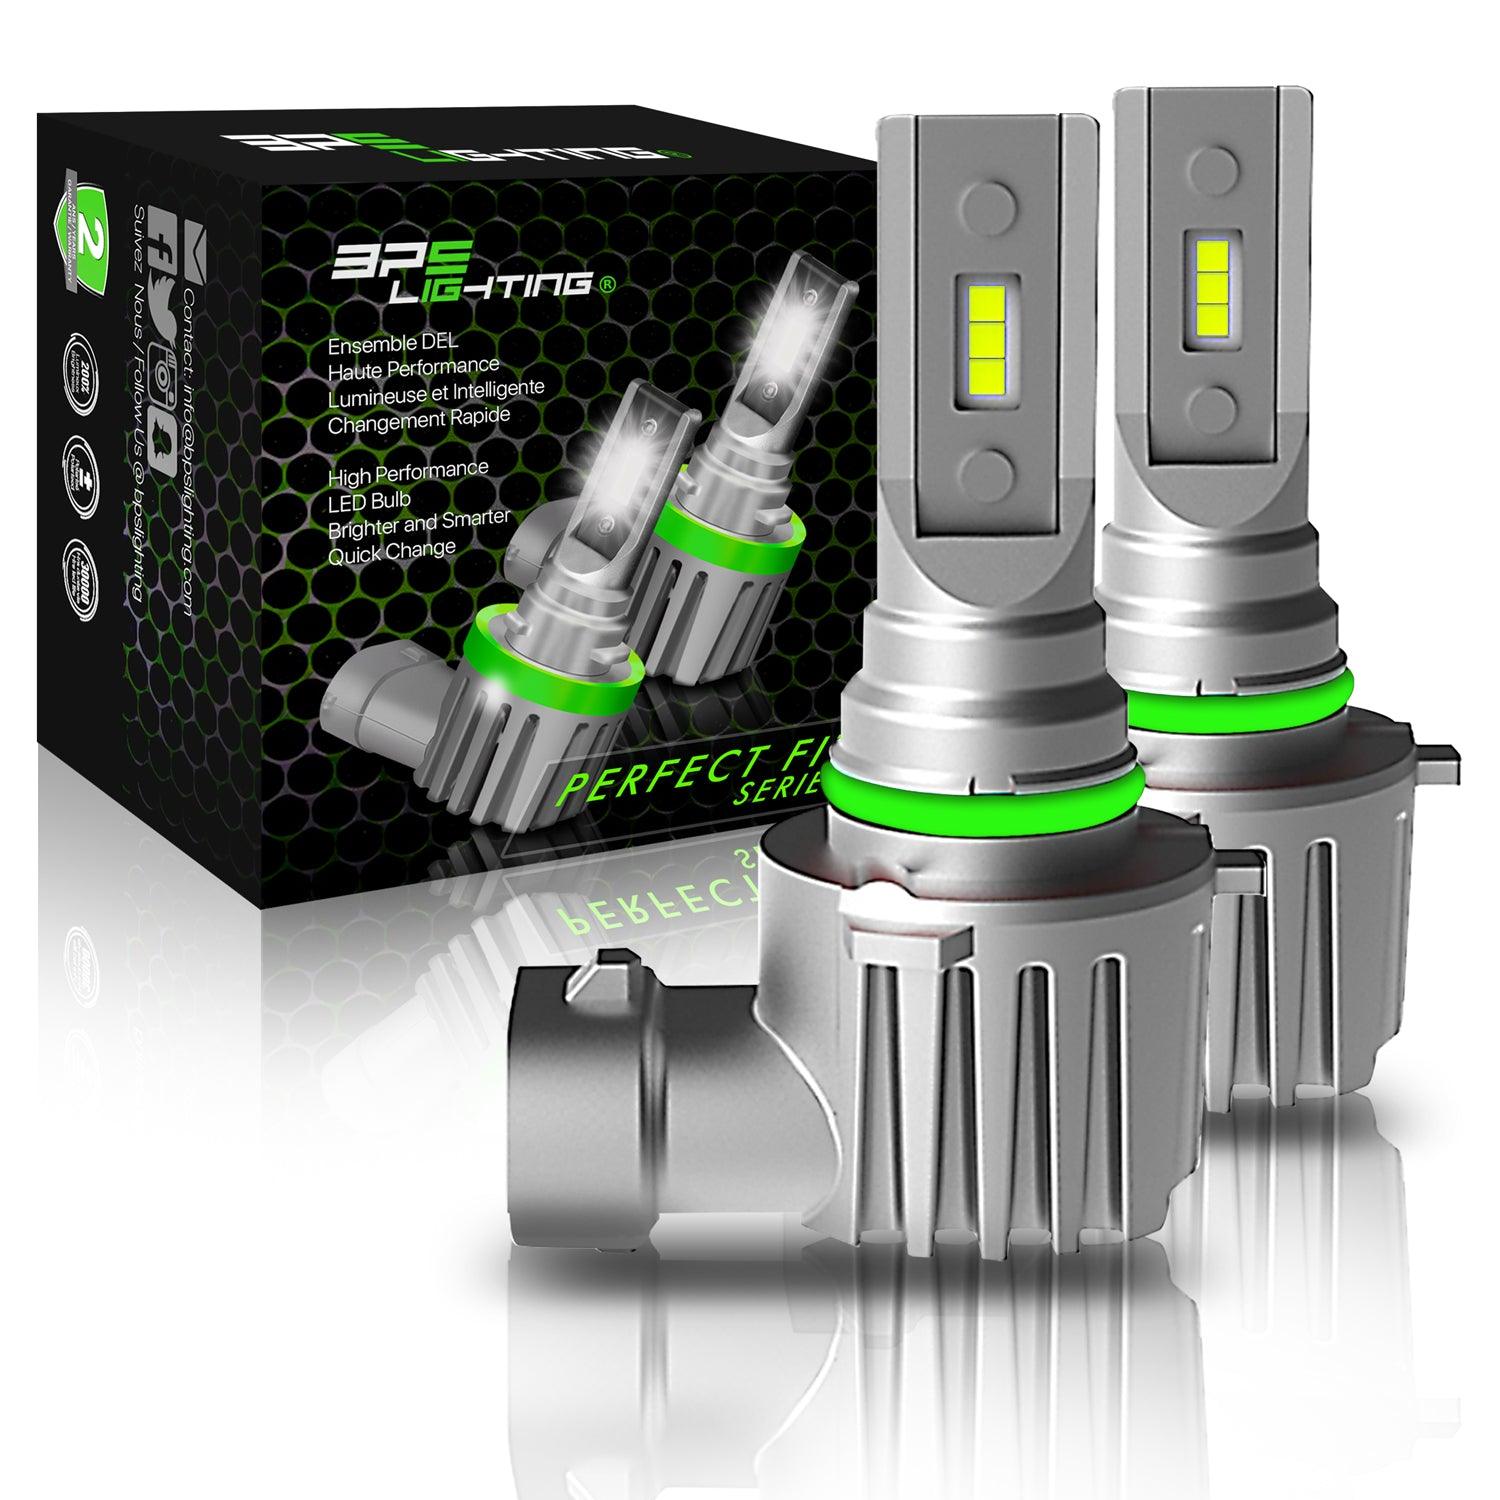 http://bpslighting.com/cdn/shop/products/9005-hb3-perfect-fit-series-led-headlight-bulbs-8000-lumens-bps-lighting-1.jpg?v=1664973335